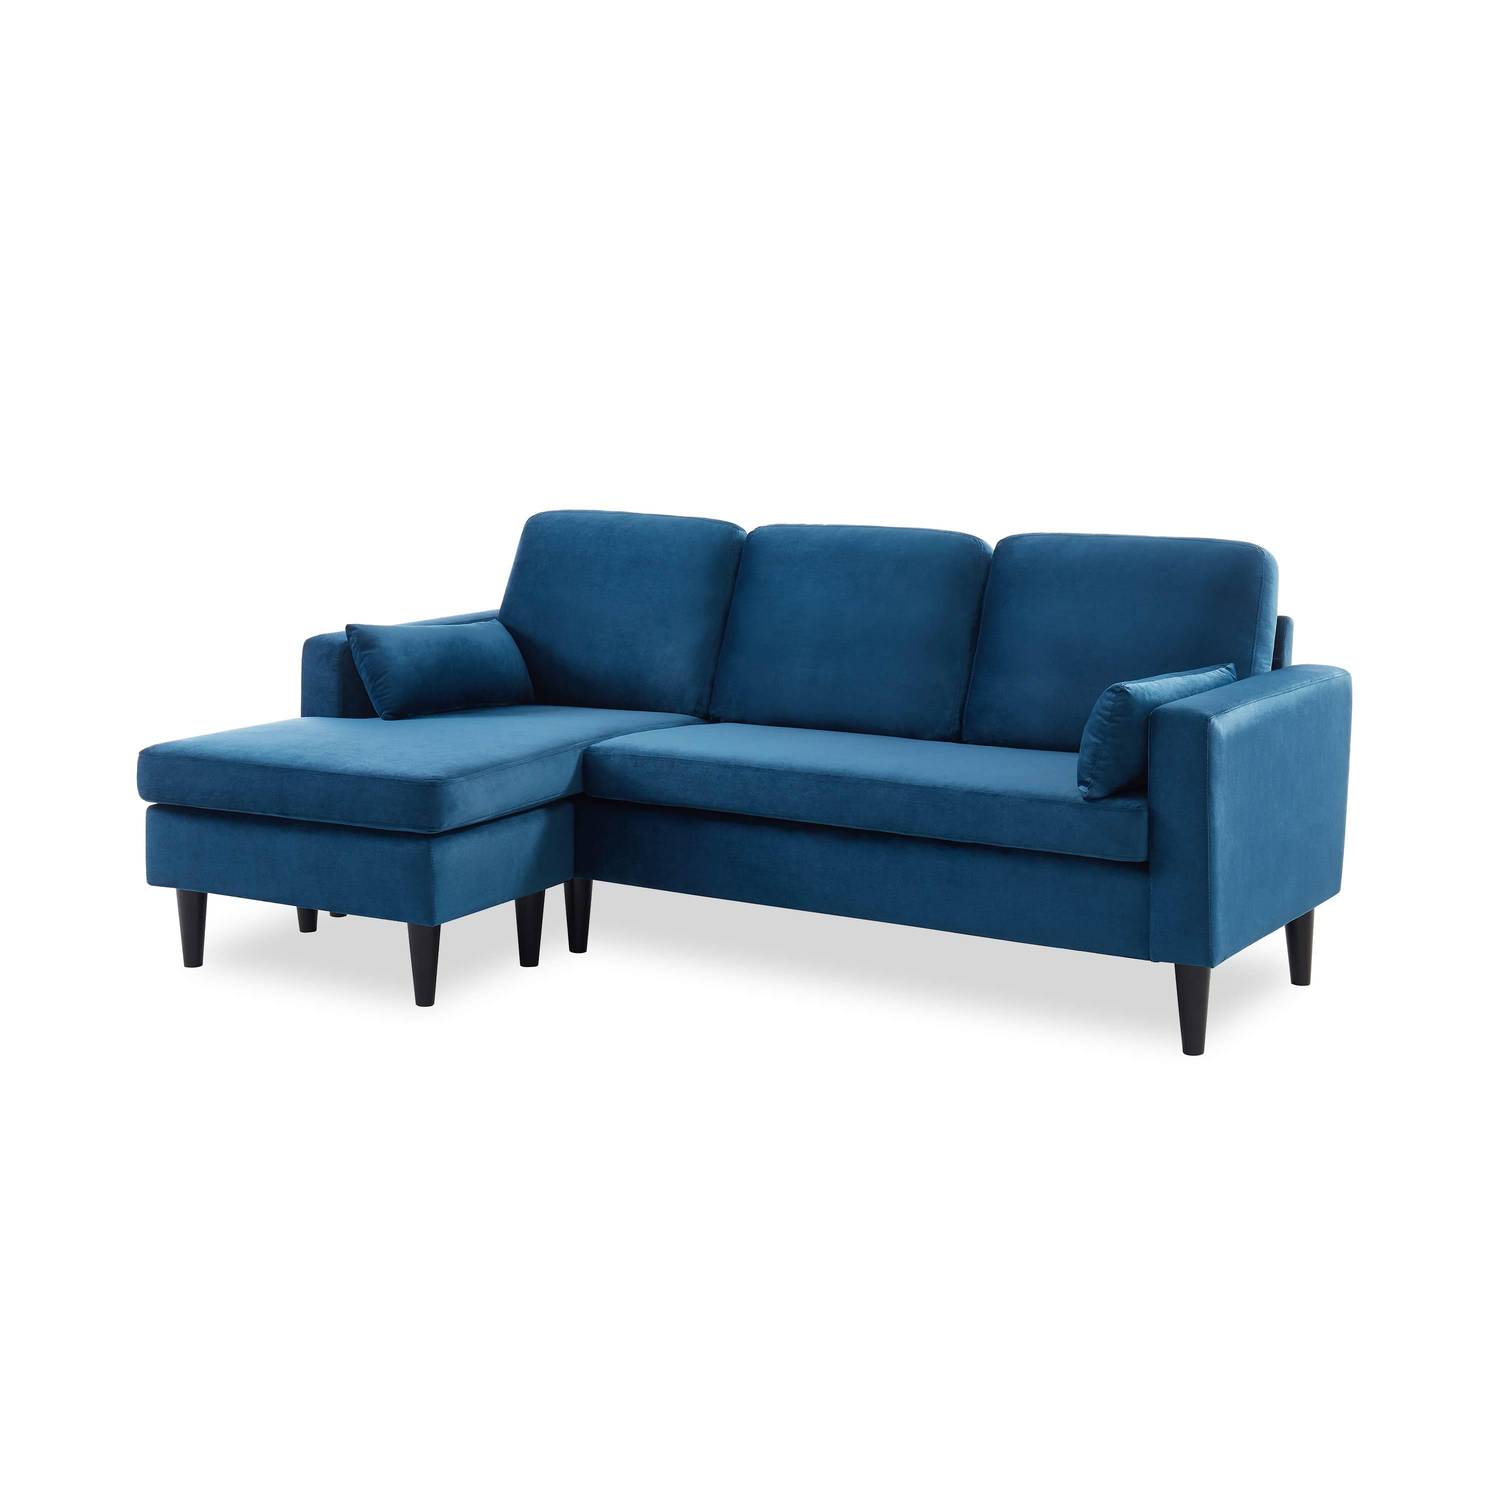 3-Sitzer-Wende-Ecksofa mit Holzbeinen, blaues velour, skandinavisches Sofa Photo2